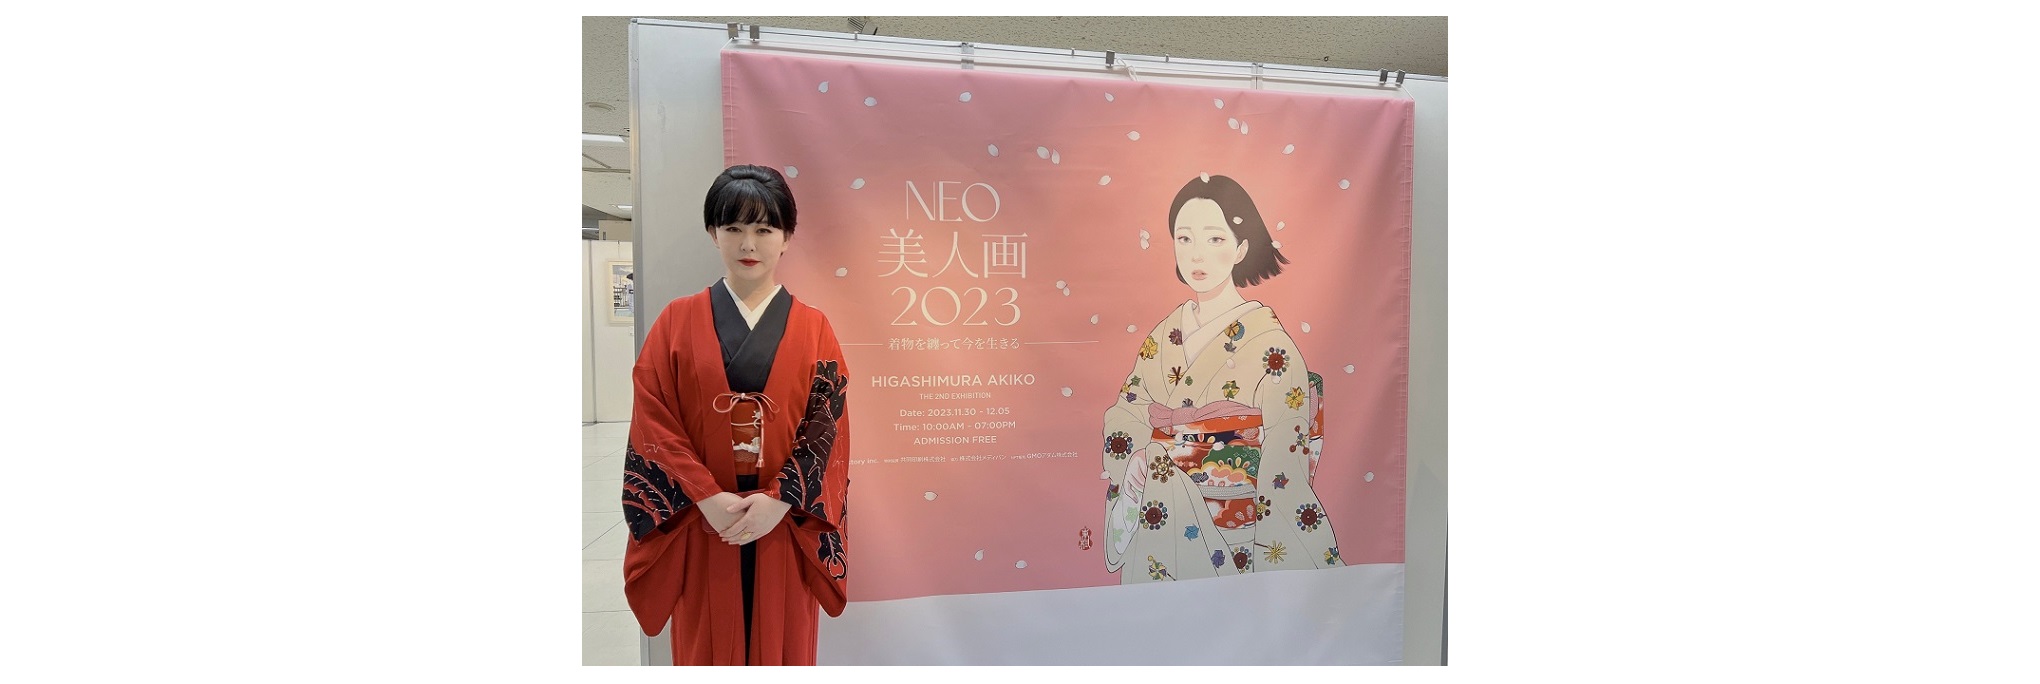 東村アキコNFT「NEO美人画2023」販売中―新しいアート所有の形を体験しませんか？―